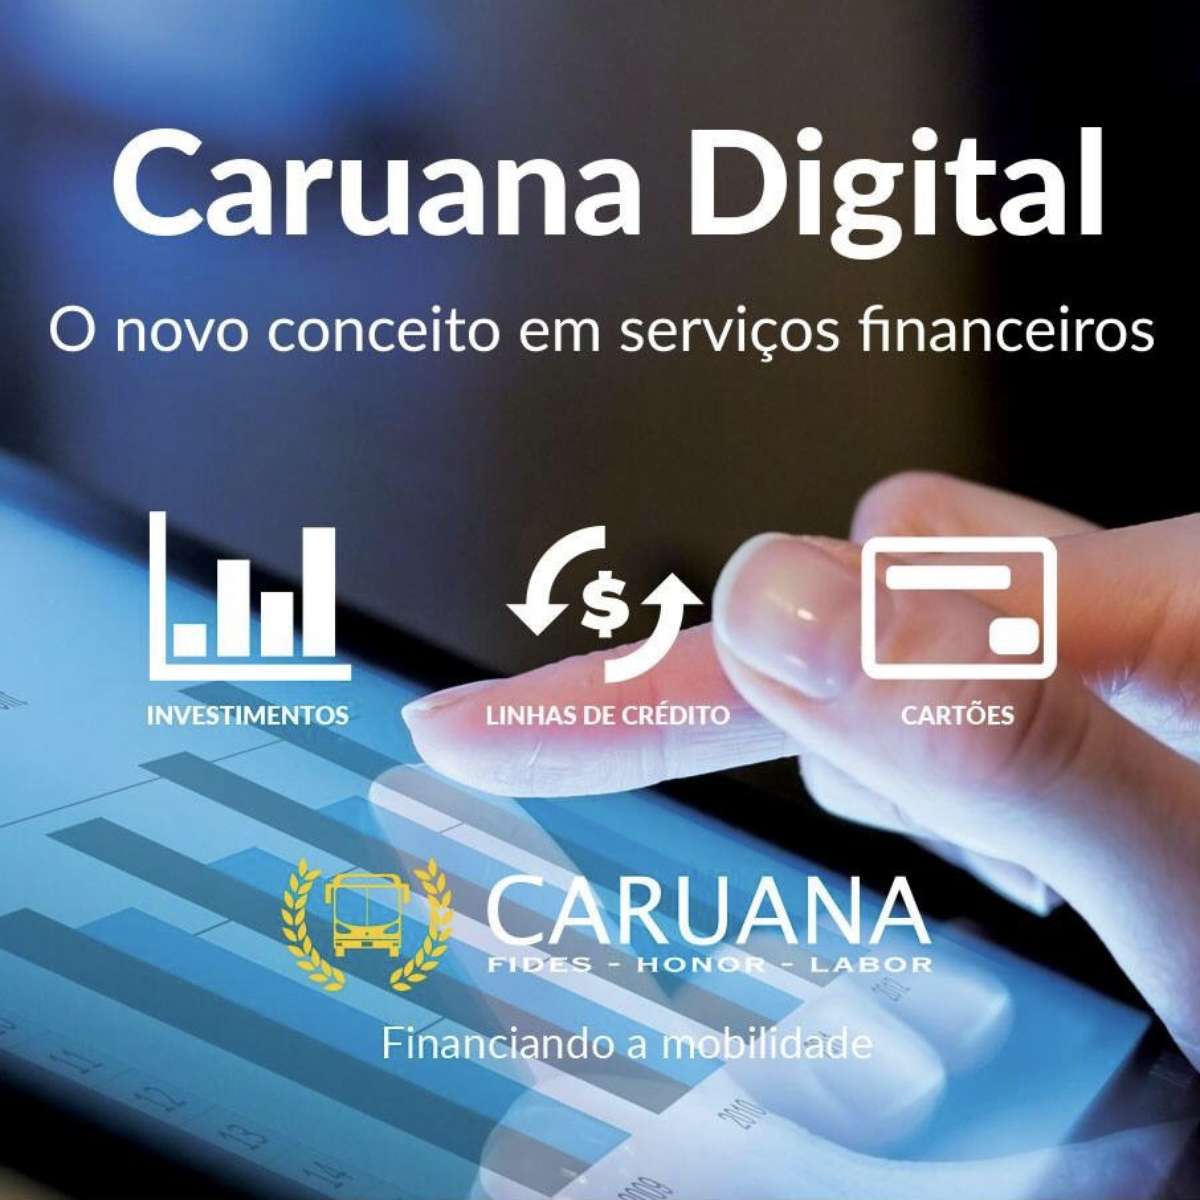 Caruana Financeira cria canal digital de serviços financeiros e traz  investimento de até 124% do CDI